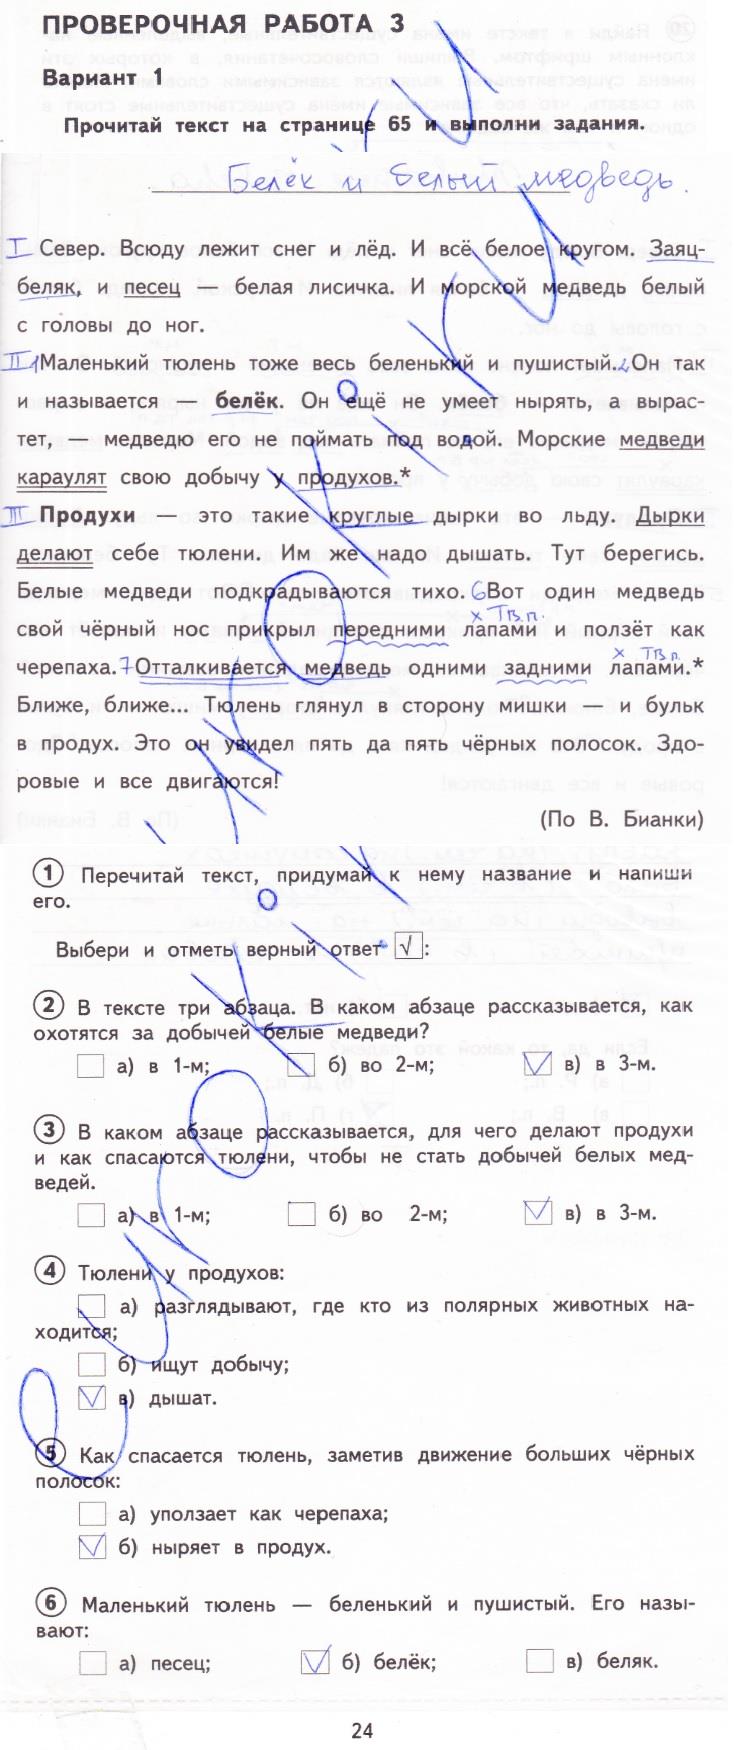 гдз 3 класс тетрадь для проверочных работ страница 24 русский язык Лаврова